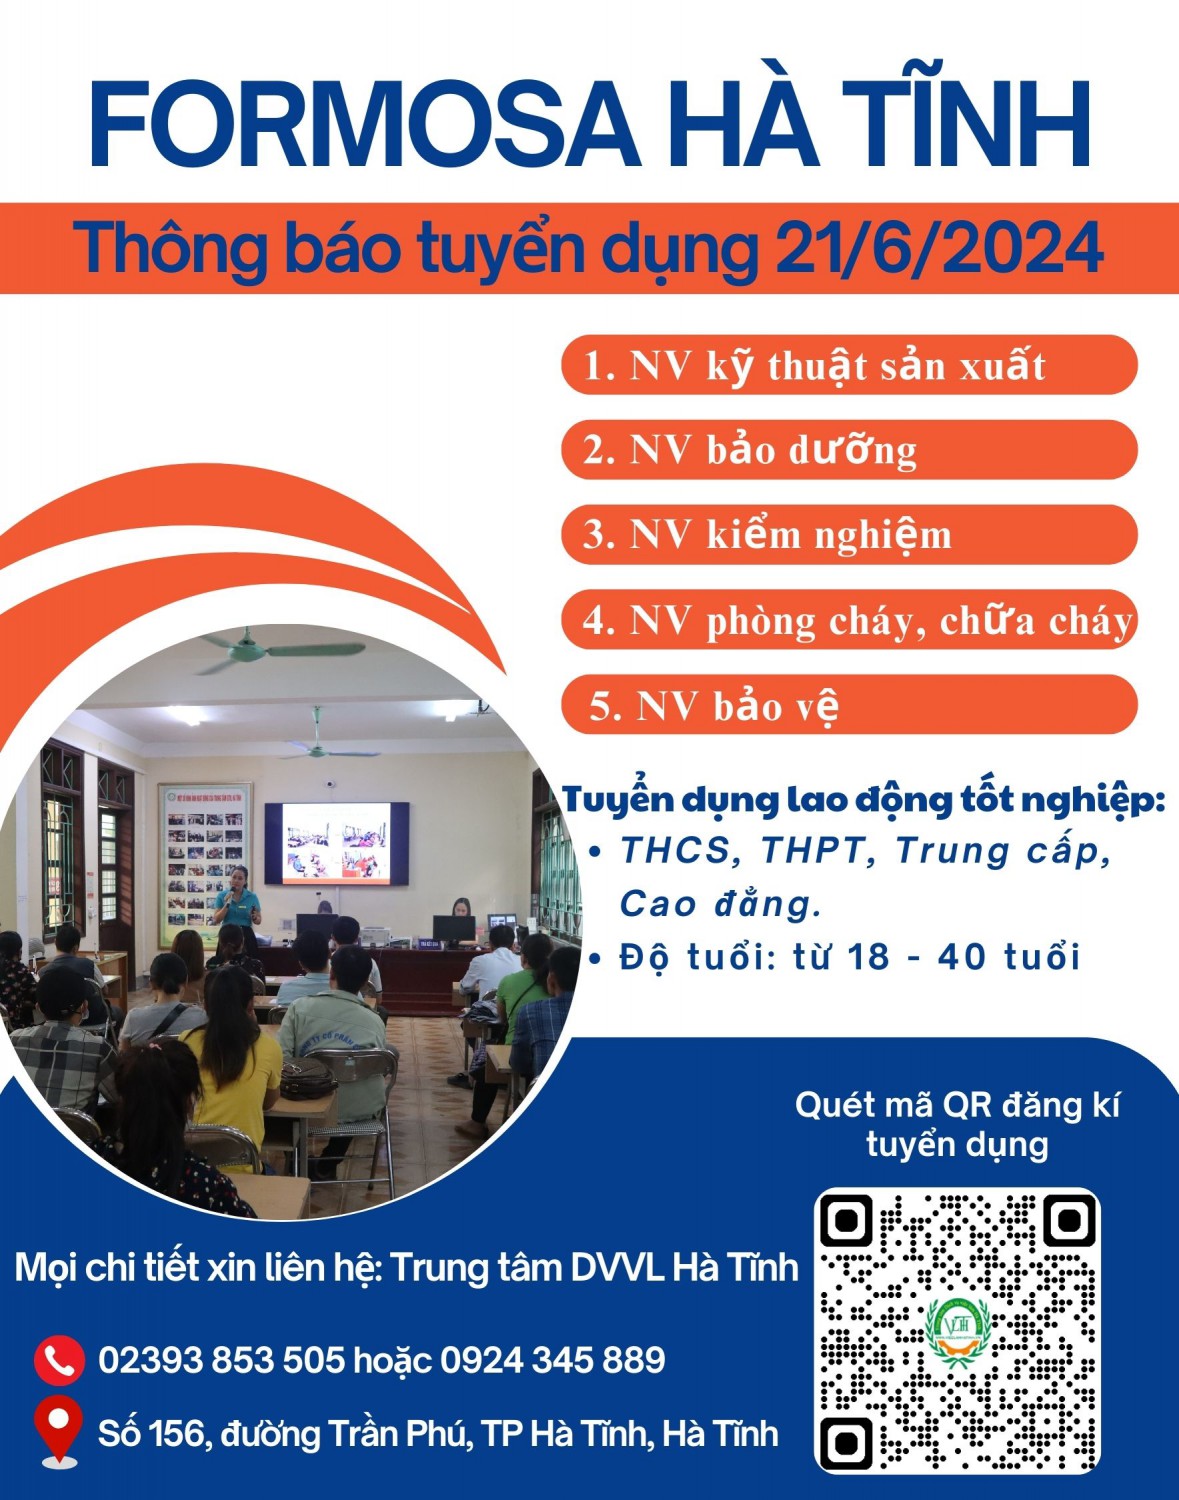 Formosa Hà Tĩnh thông báo tuyển dụng ngày 21/6/2024 tại Sàn GDVL Thành phố Hà Tĩnh